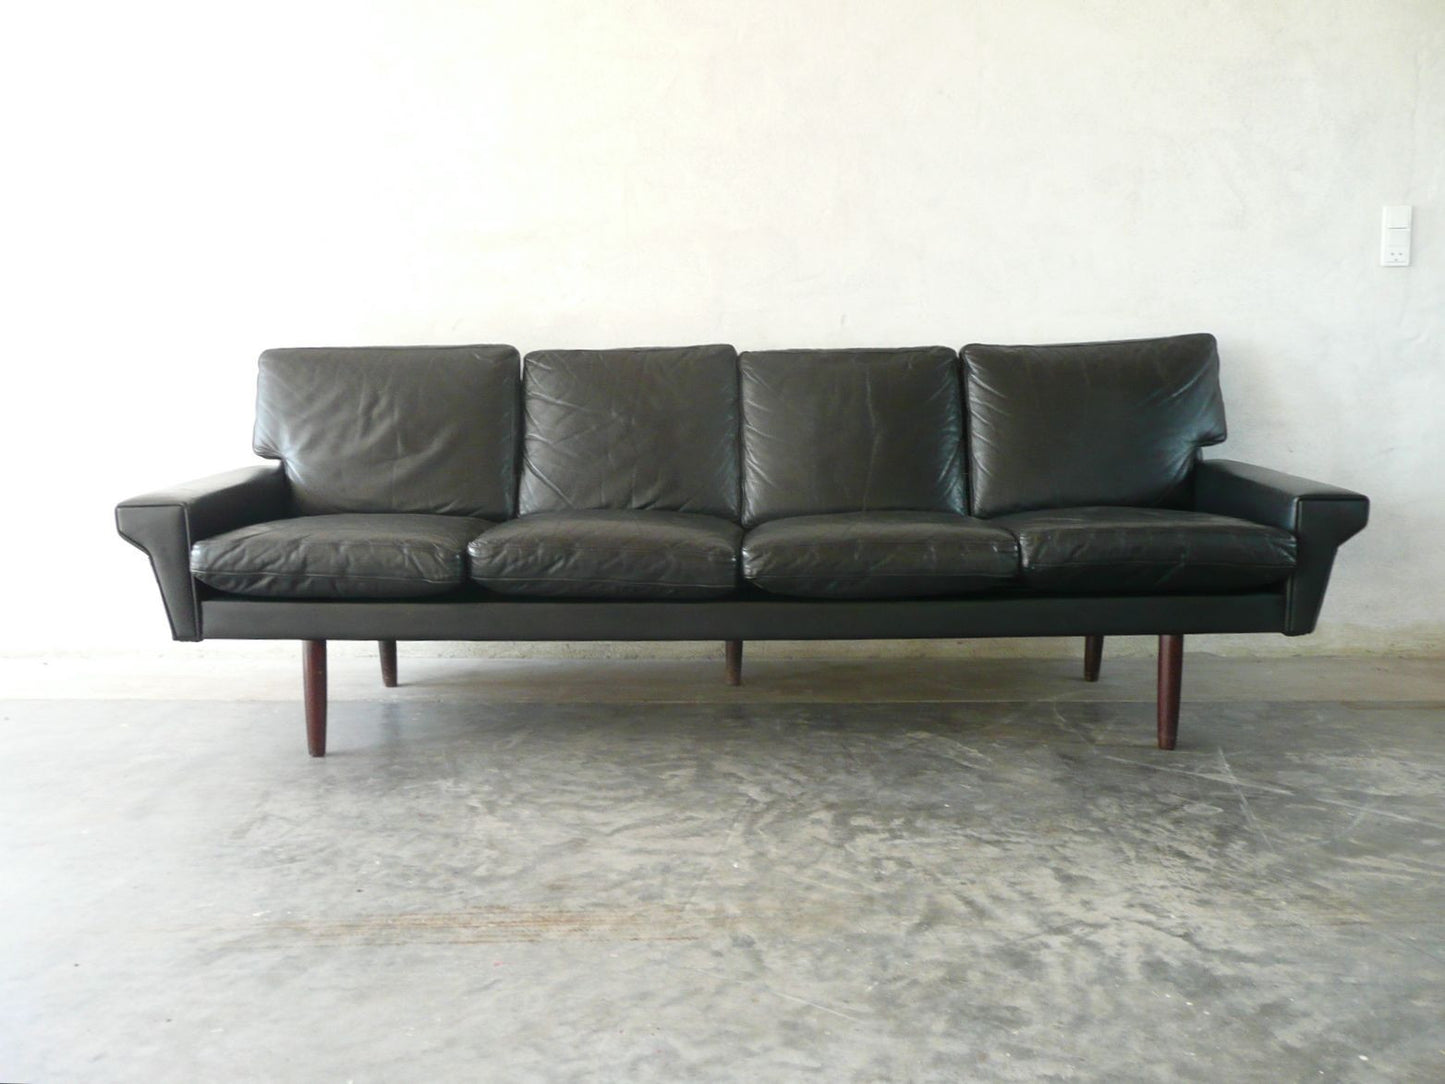 Four seat leather sofa